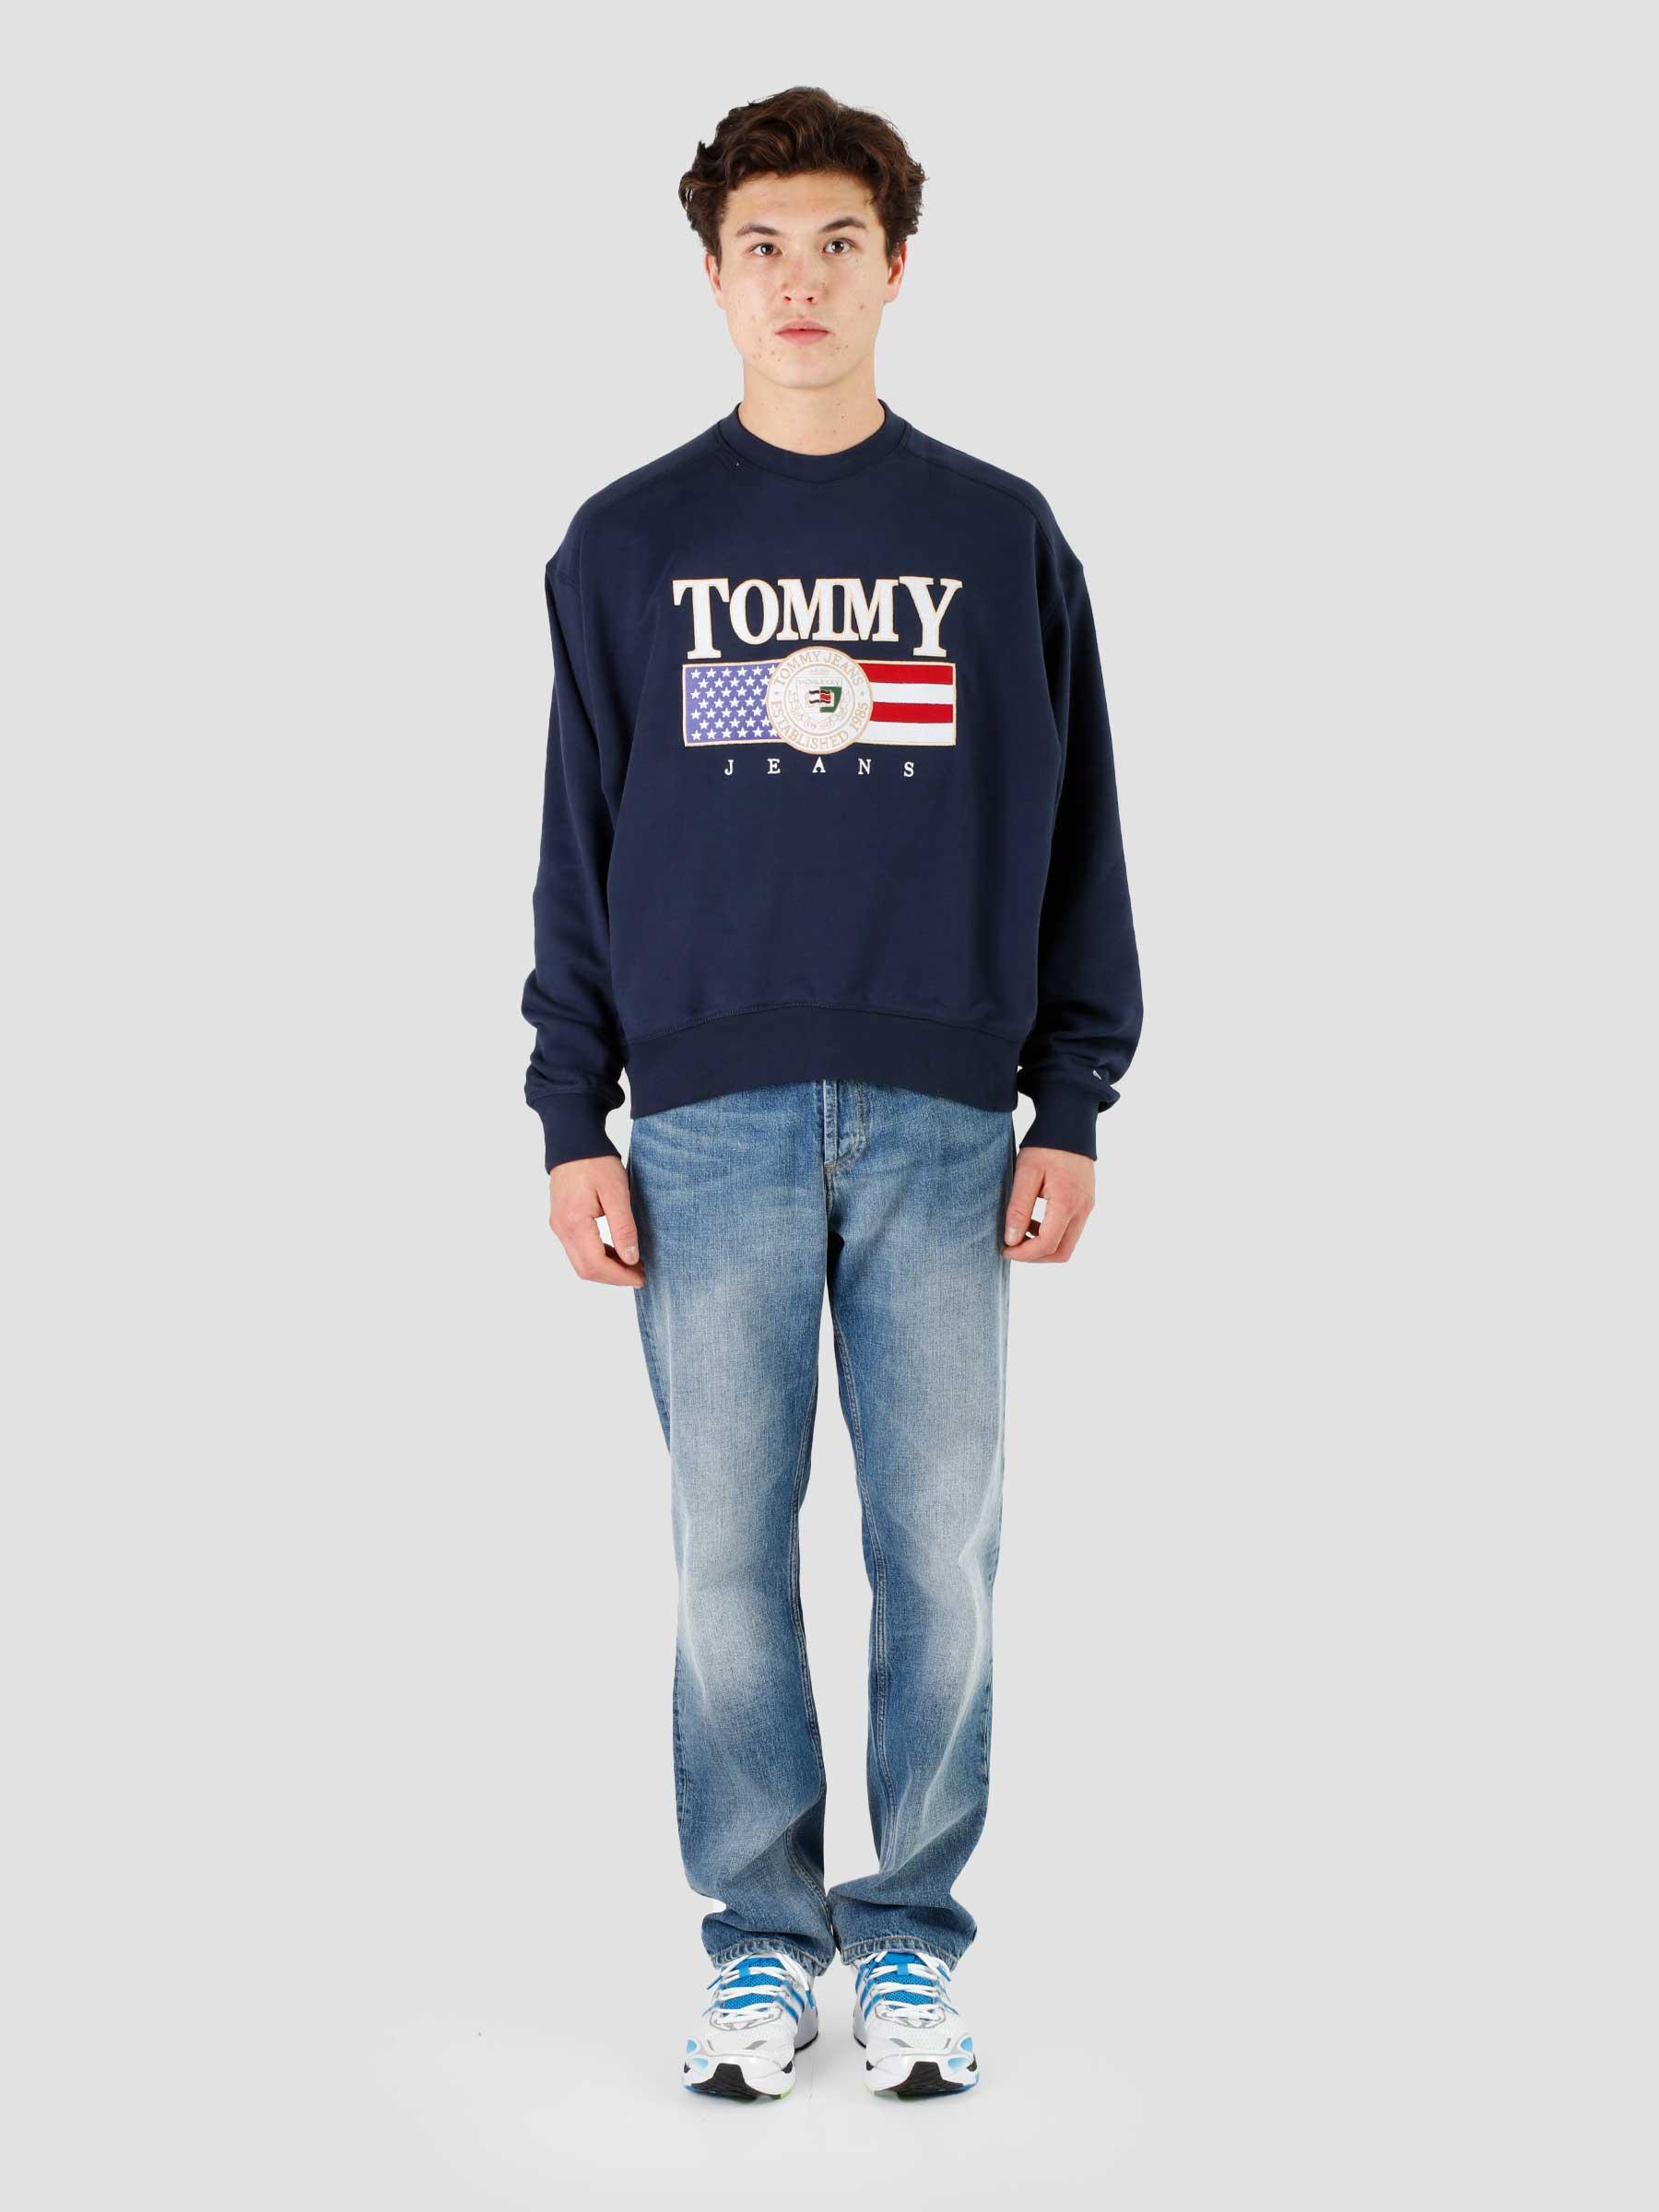 Tommy Jeans TJM Twilight - TJ Boxy Luxe Navy Freshcotton Crewneck